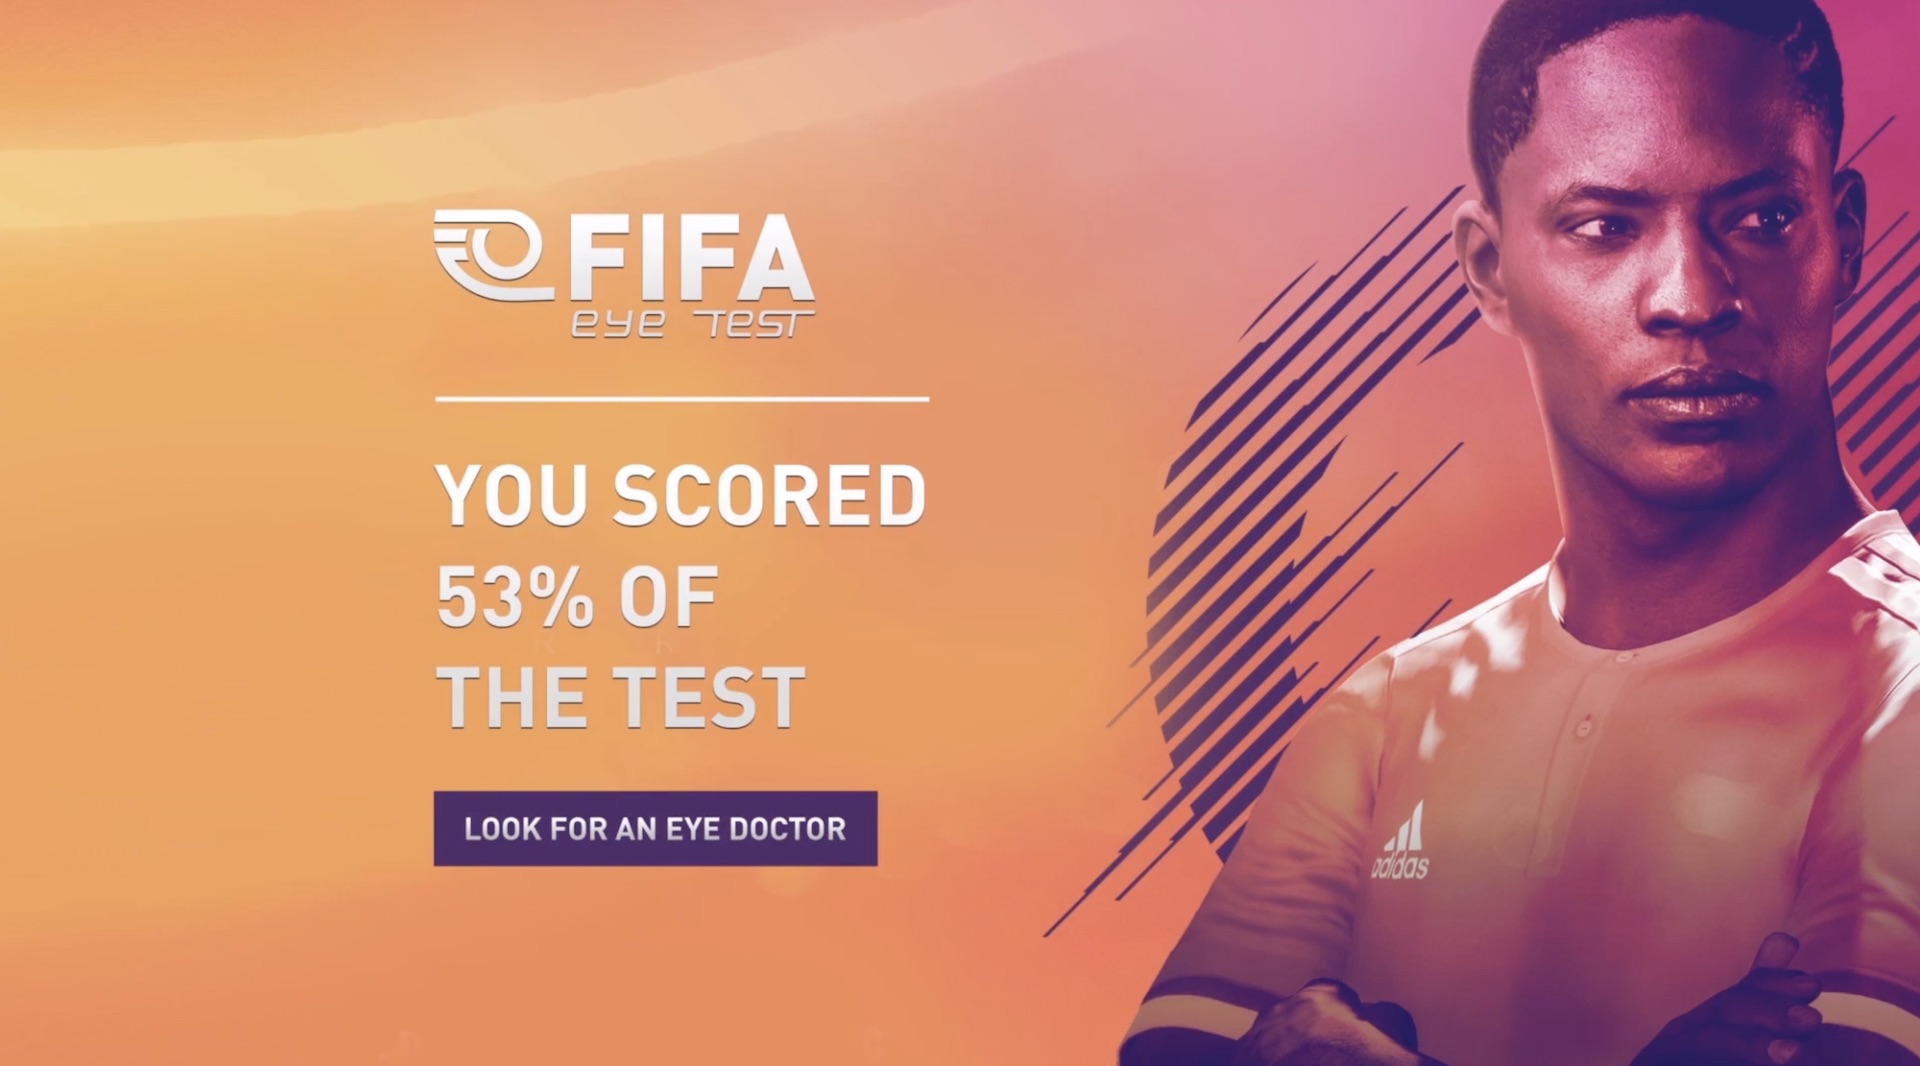 Vega Digital Awards Winner - FIFA Eye Test